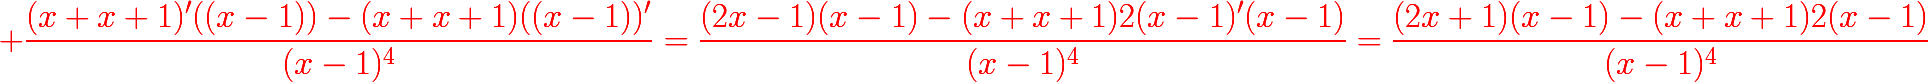 {\color{red}{\huge \dfrac{(x+x+1)'((x-1))-(x+x+1)((x-1))'}{(x-1)^{4}}=\dfrac{(2x-1)(x-1)-(x+x+1)2(x-1)'(x-1)}{(x-1)^{4}}=\dfrac{(2x+1)(x-1)-(x+x+1)2(x-1)}{(x-1)^{4}}}}